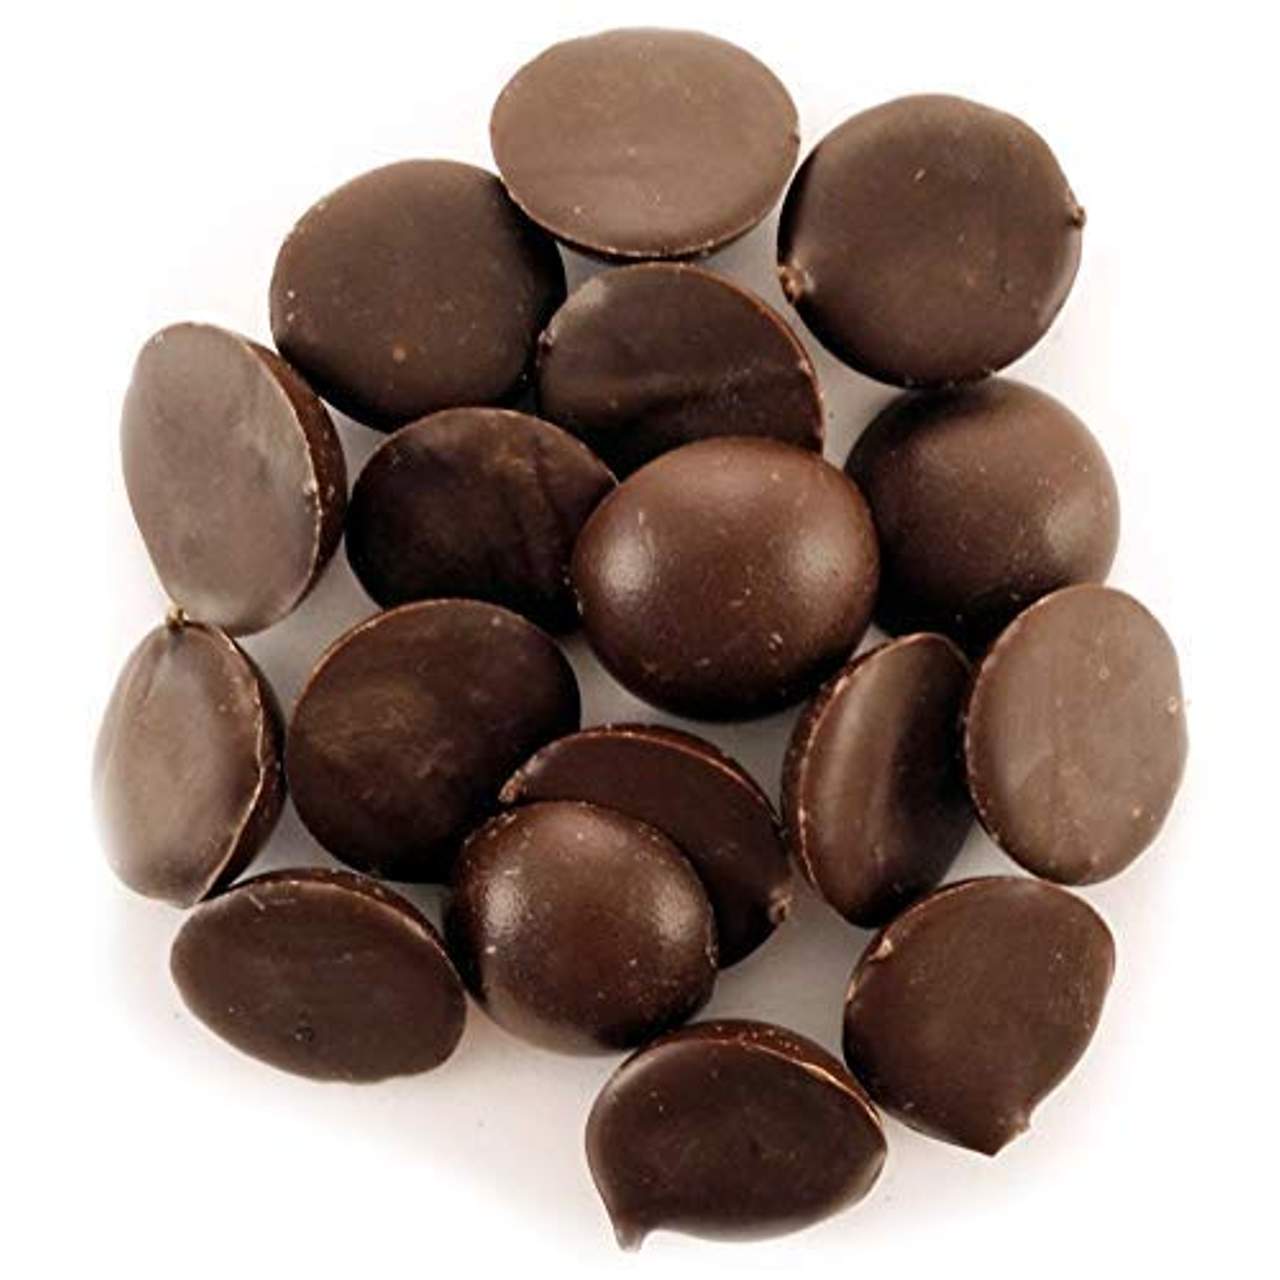 Edelmond 100 % Kakaobohne für heiße Trink Schokolade ohne Zucker